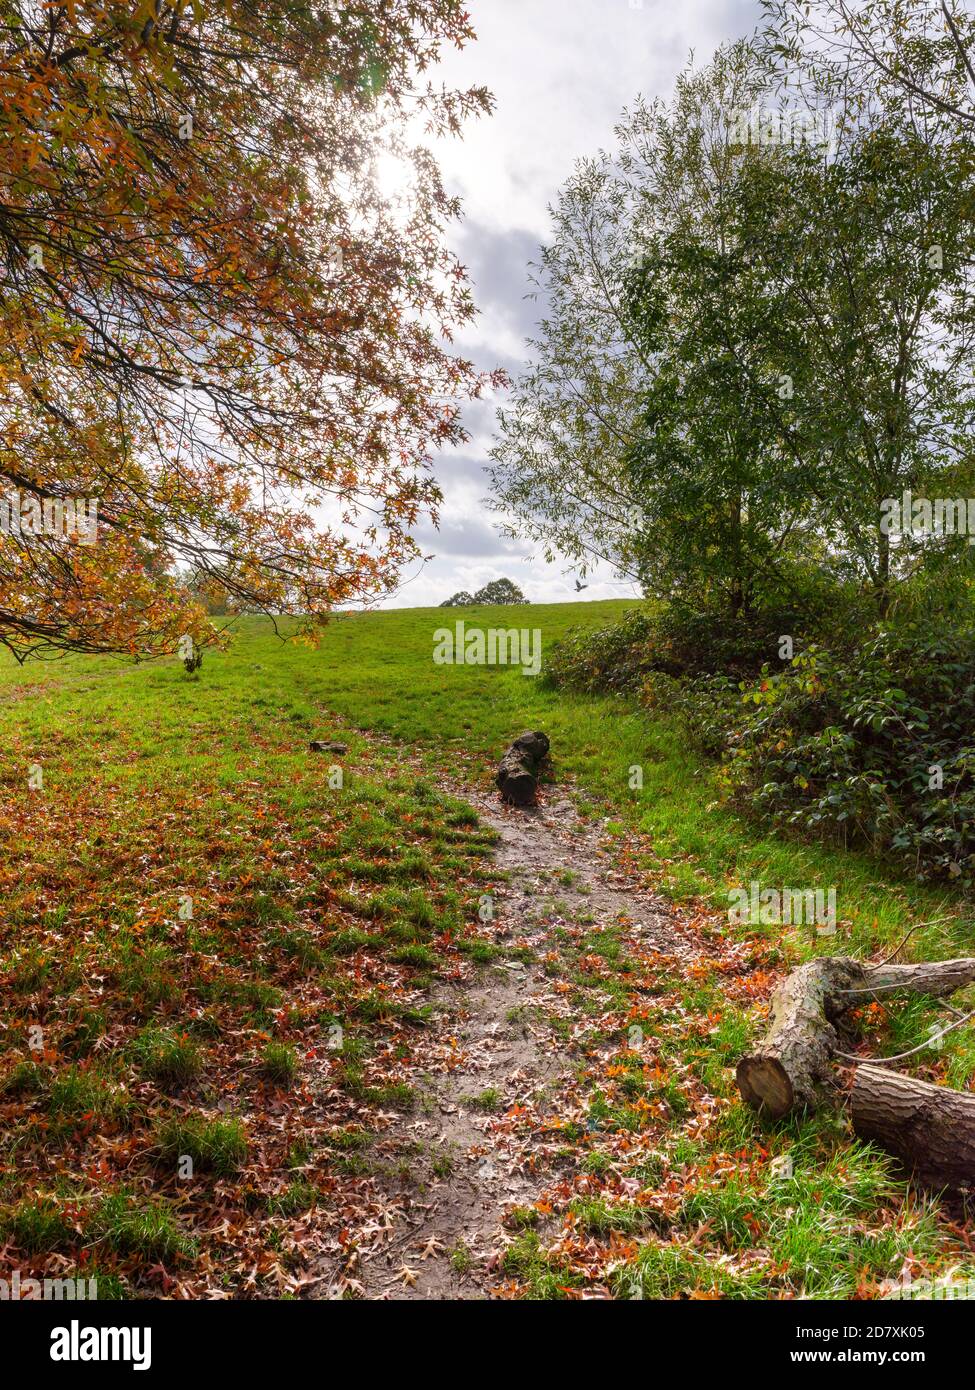 Hampstead Heath en automne, avec les feuilles sur les arbres tournant, un endroit idéal pour l'exercice et la santé pendant la pandémie et au-delà Banque D'Images